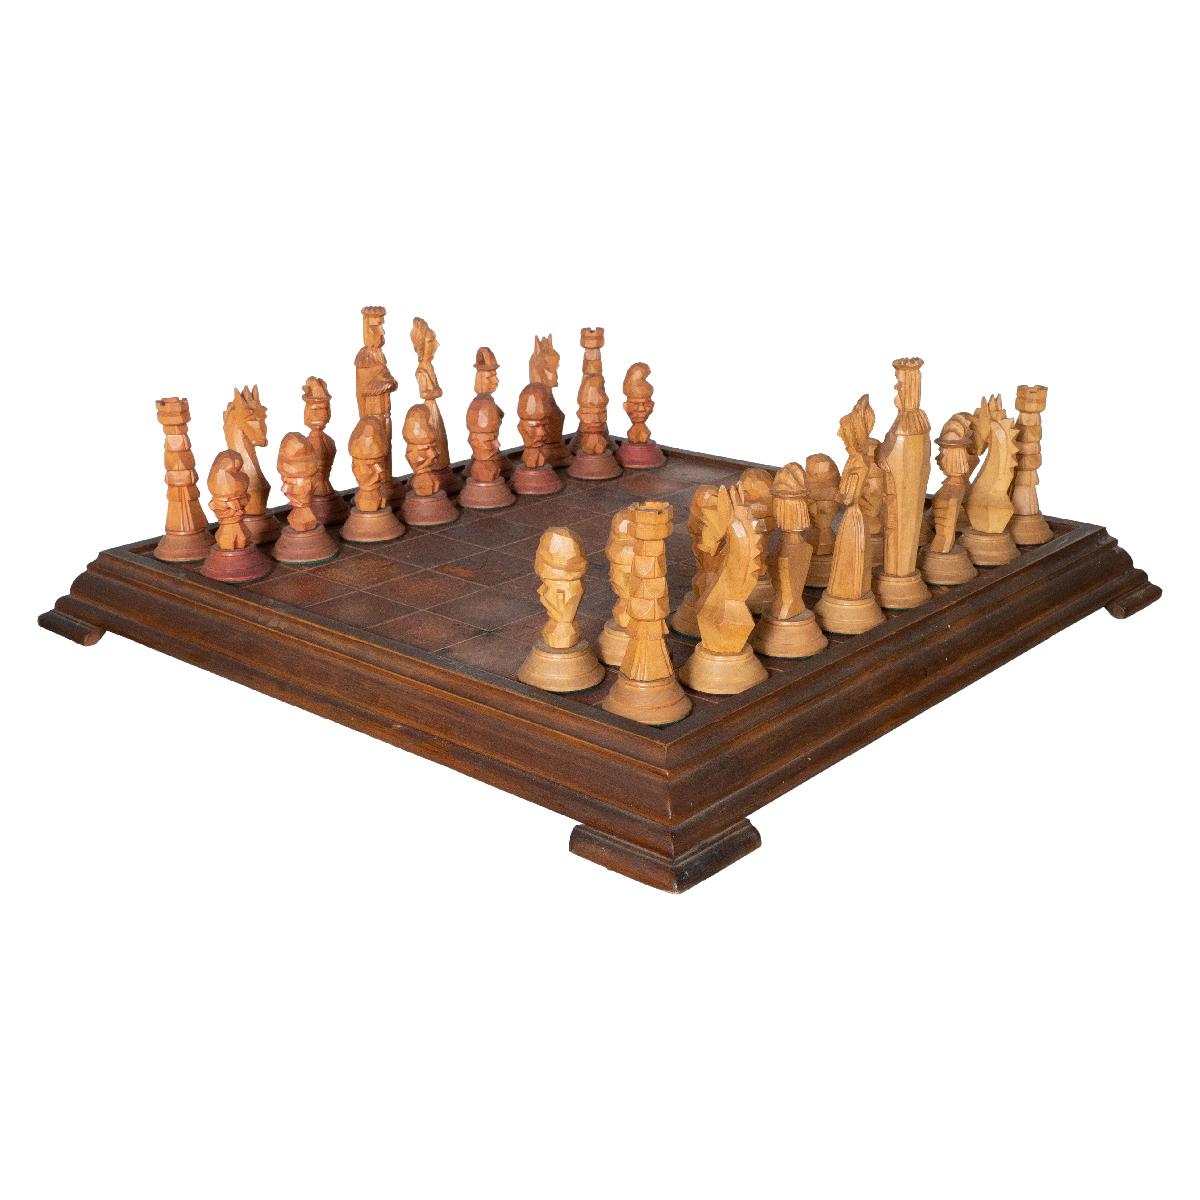 Jeu d'échecs en bois sculpté à la main avec plateau de jeu en cuir. La pièce maîtresse mesure 4,25